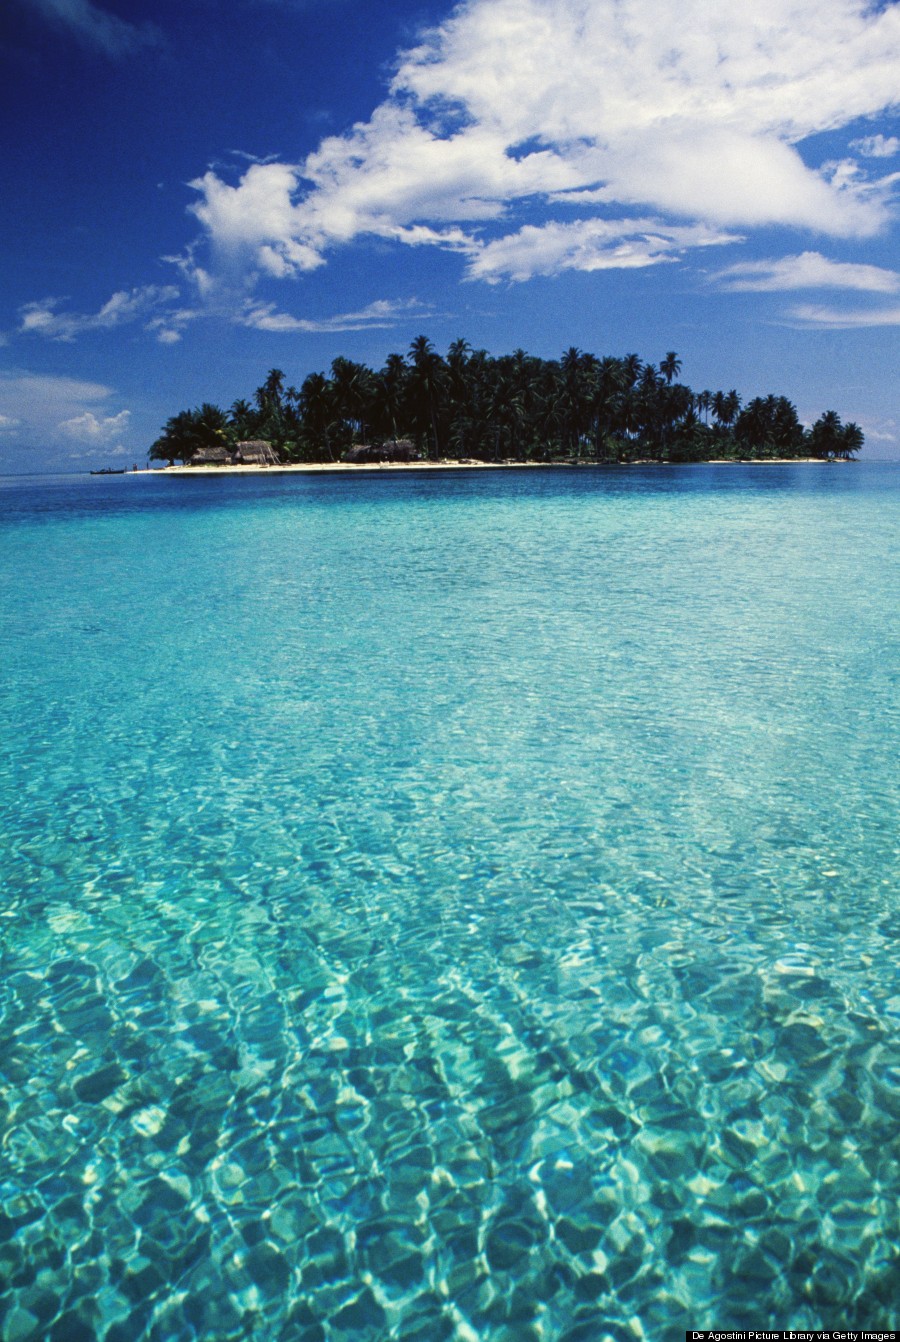 Island of Coco Blanco (White Coconut)